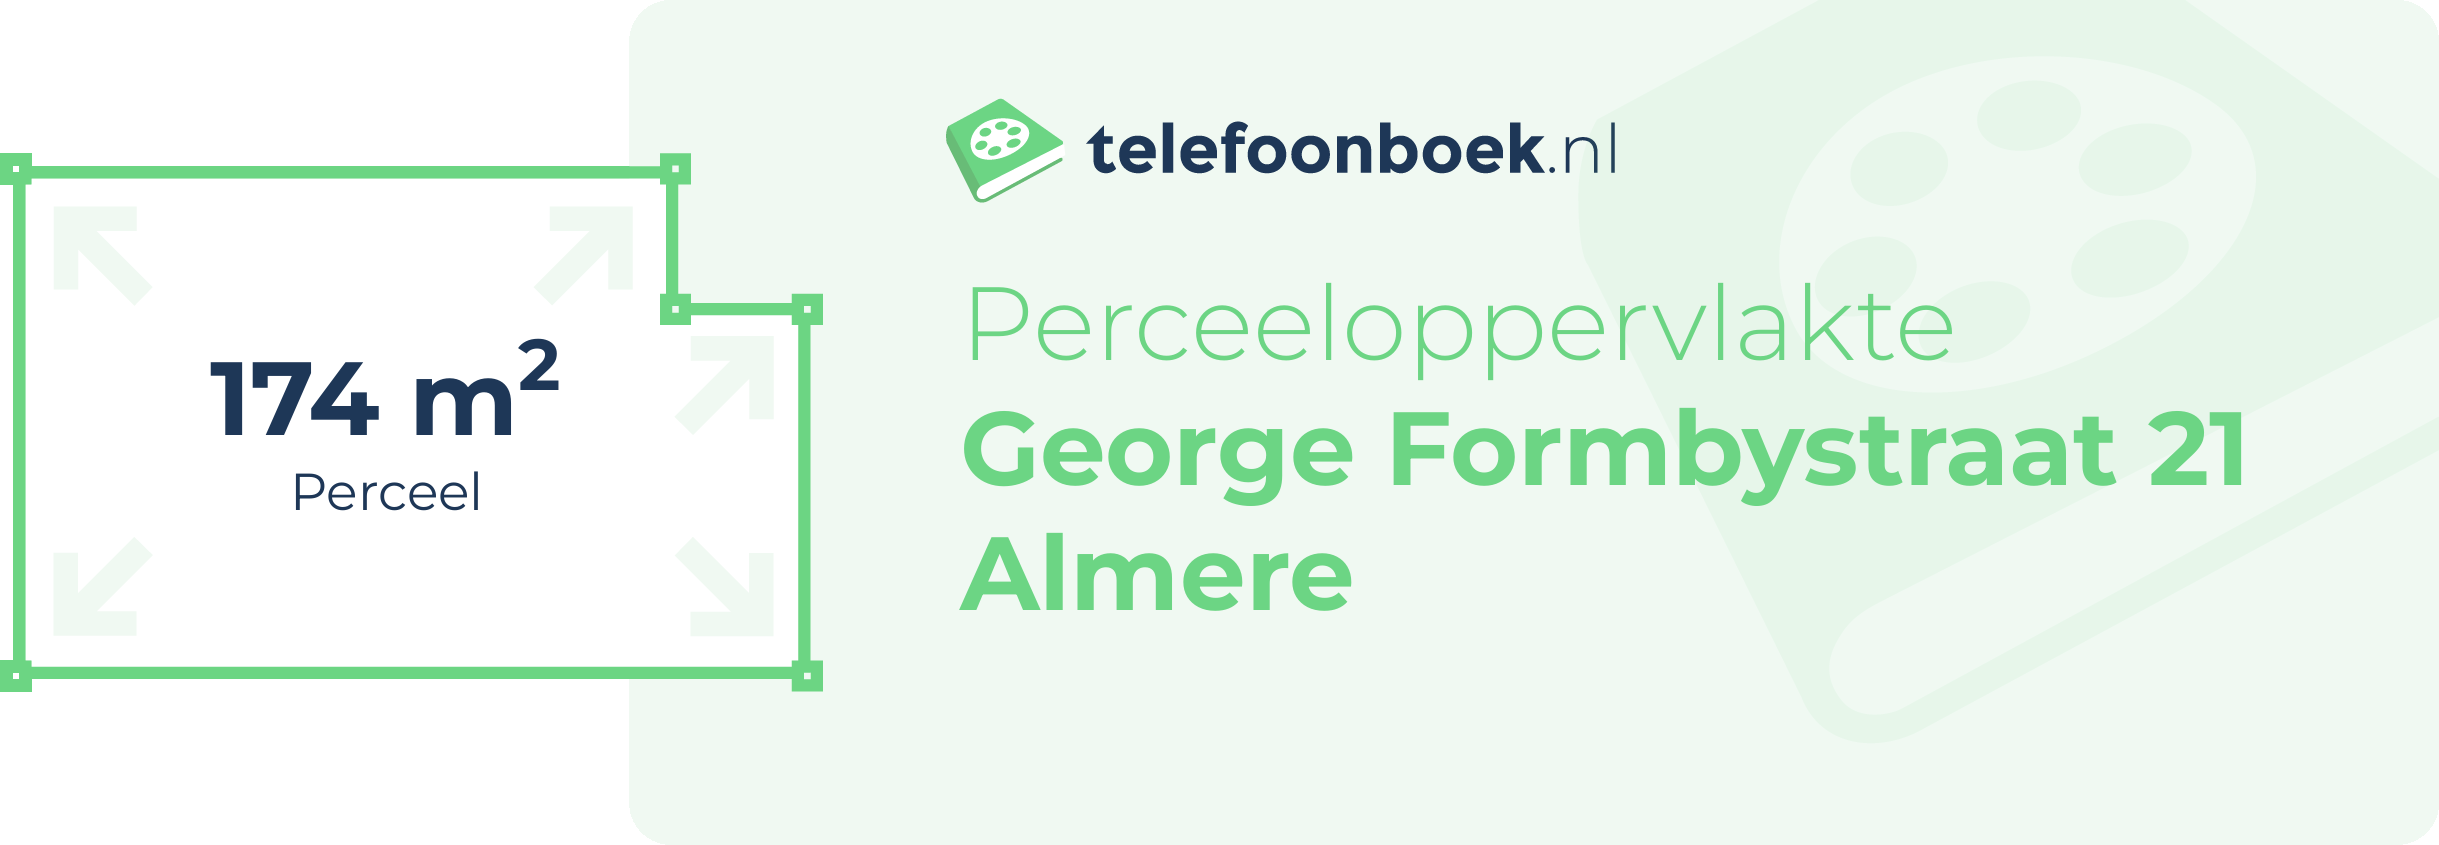 Perceeloppervlakte George Formbystraat 21 Almere